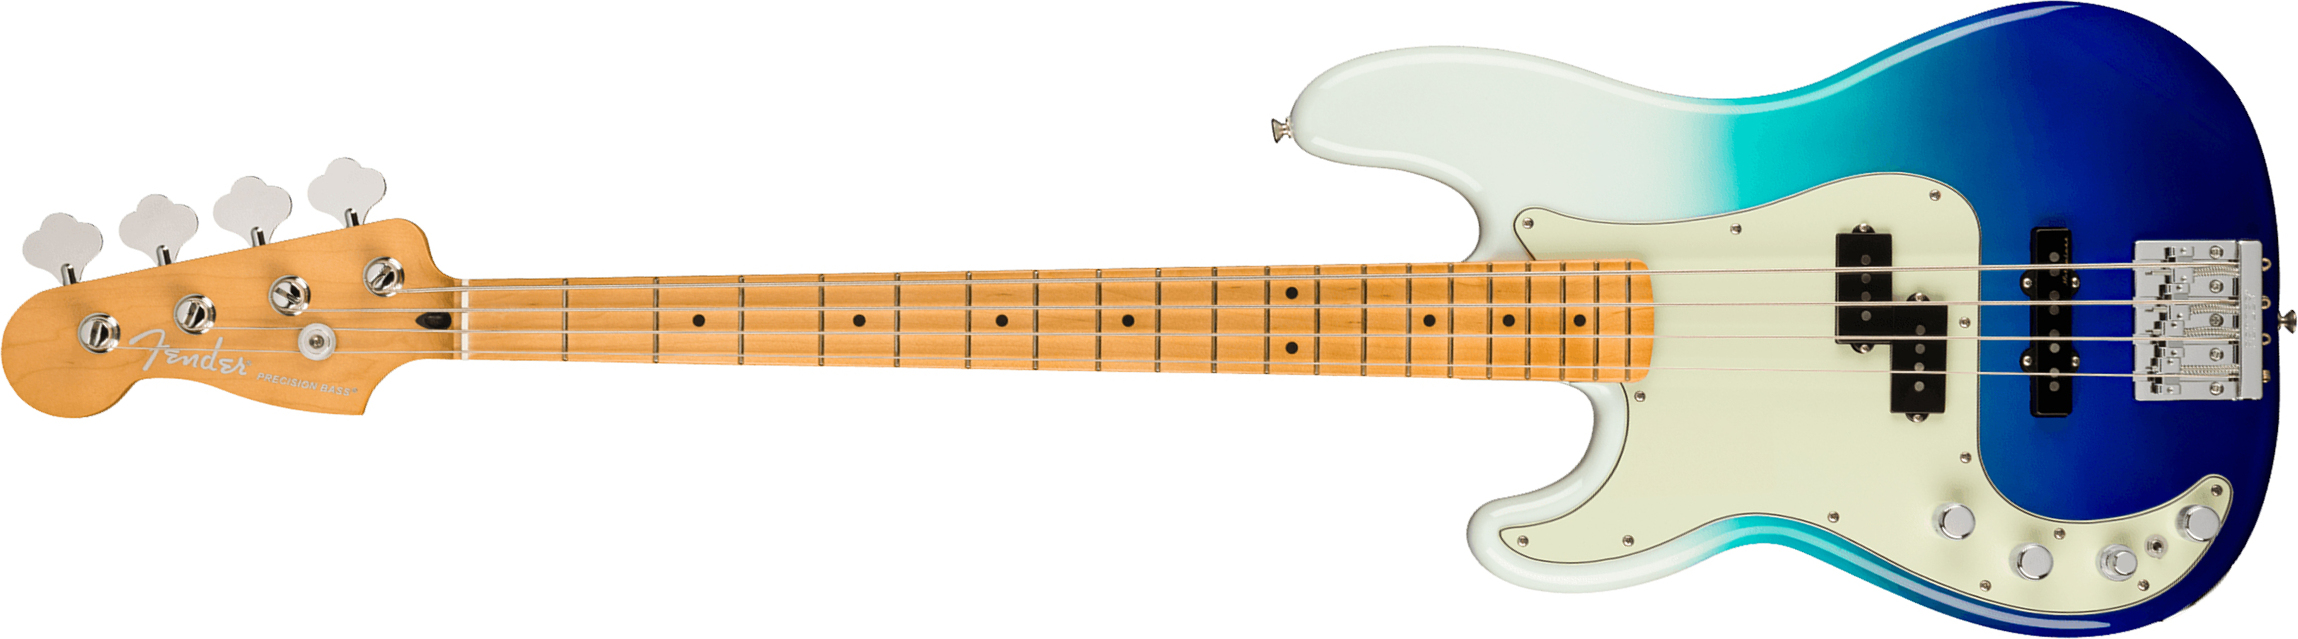 Fender Precision Bass Player Plus Lh Mex Gaucher Active Mn - Belair Blue - Bajo eléctrico de cuerpo sólido - Main picture